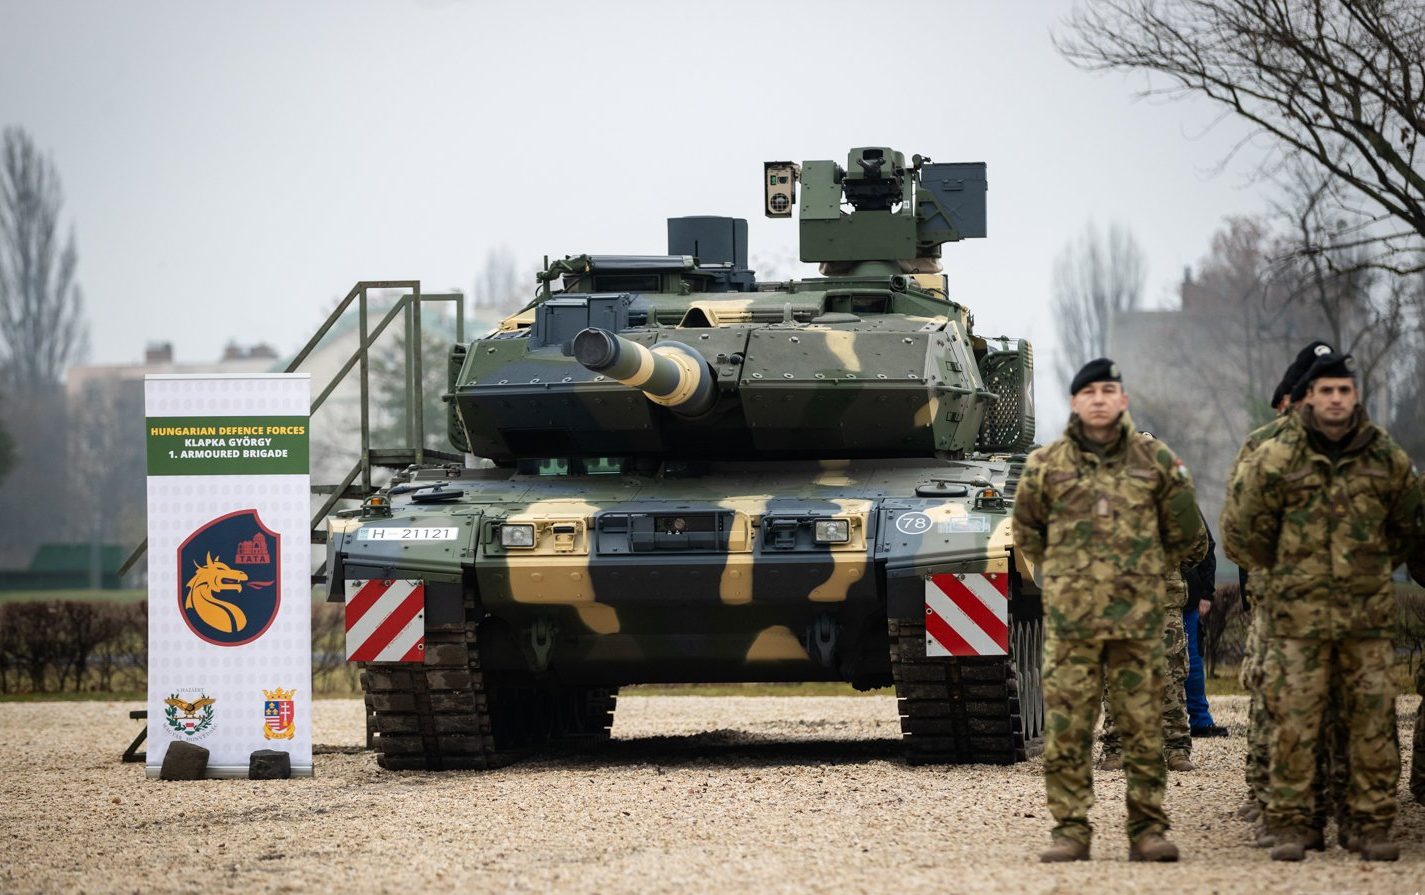 Übergabe des Leopard markiert neue Ära in der Geschichte der Streitkräfteentwicklung